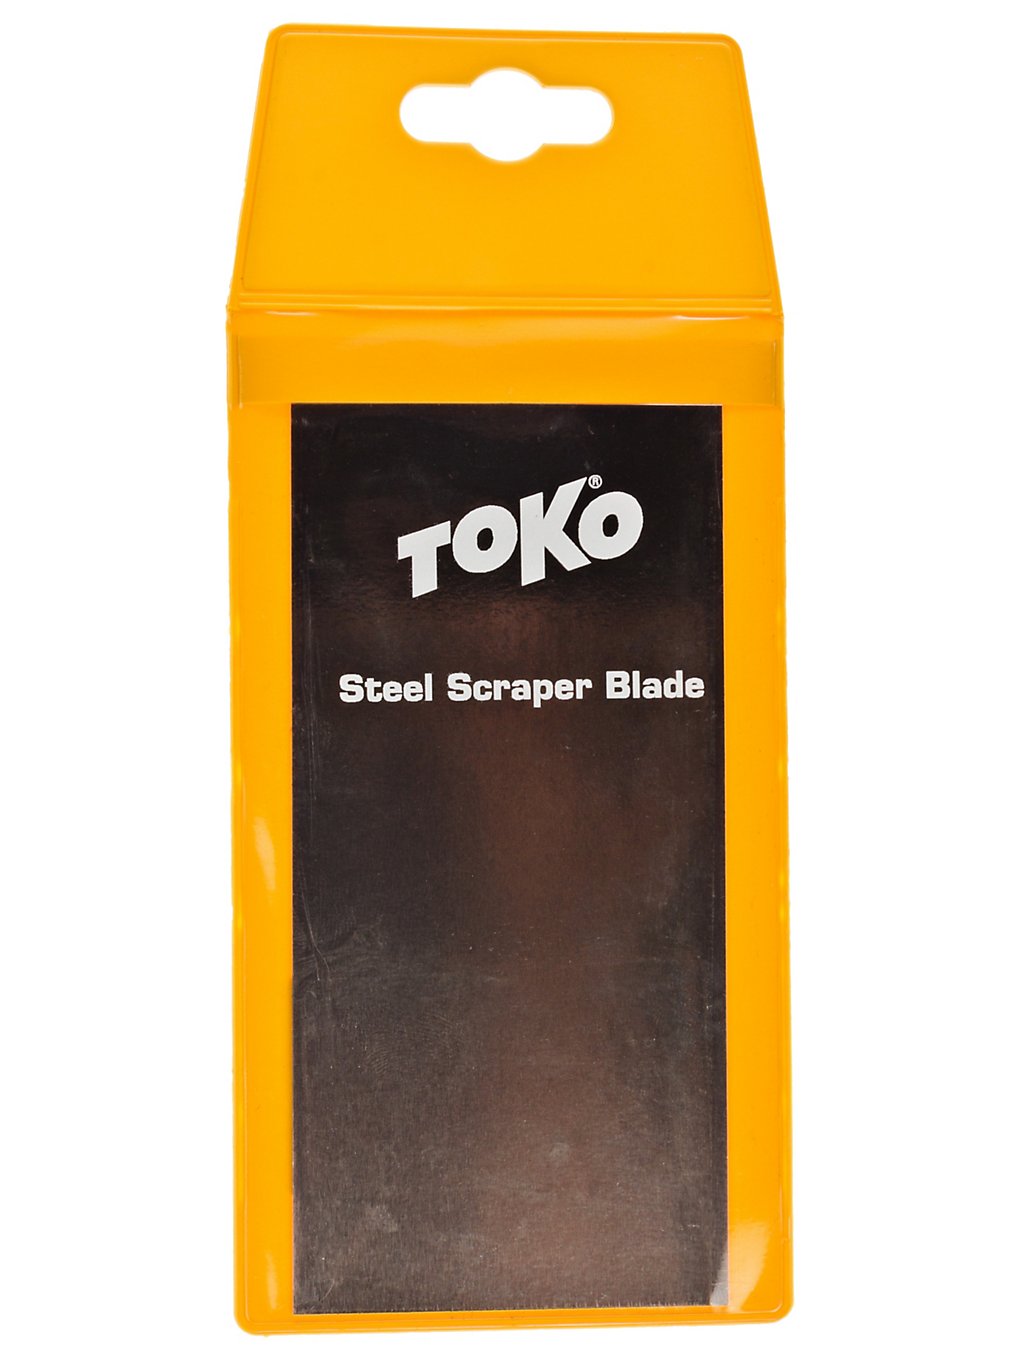 Toko Steel Scraper Blade neutral kaufen